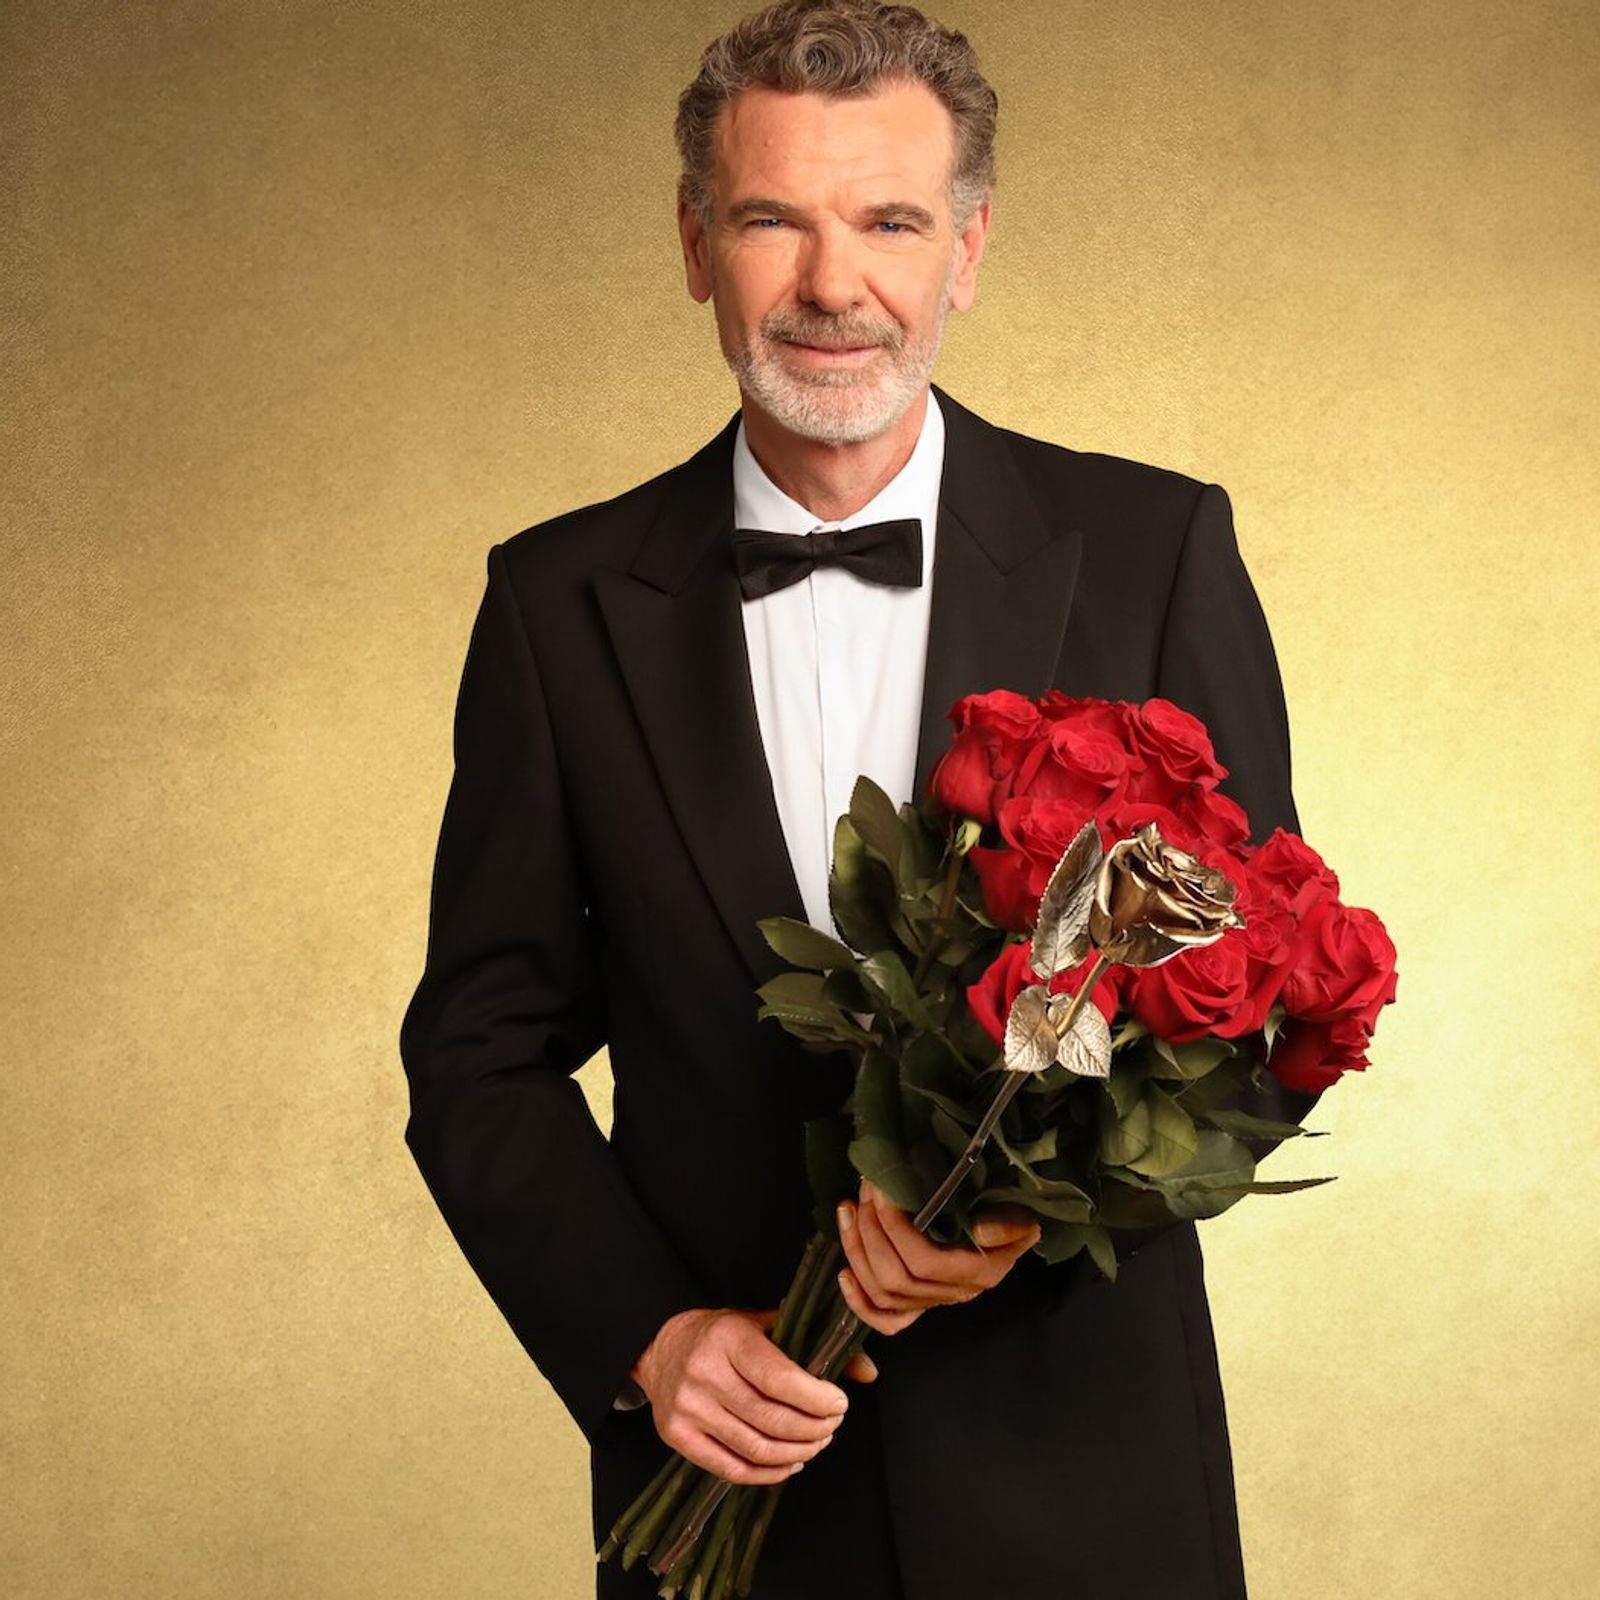 Golden Bachelor : qui est Landry, le gentleman célibataire du nouveau programme de M6 ?